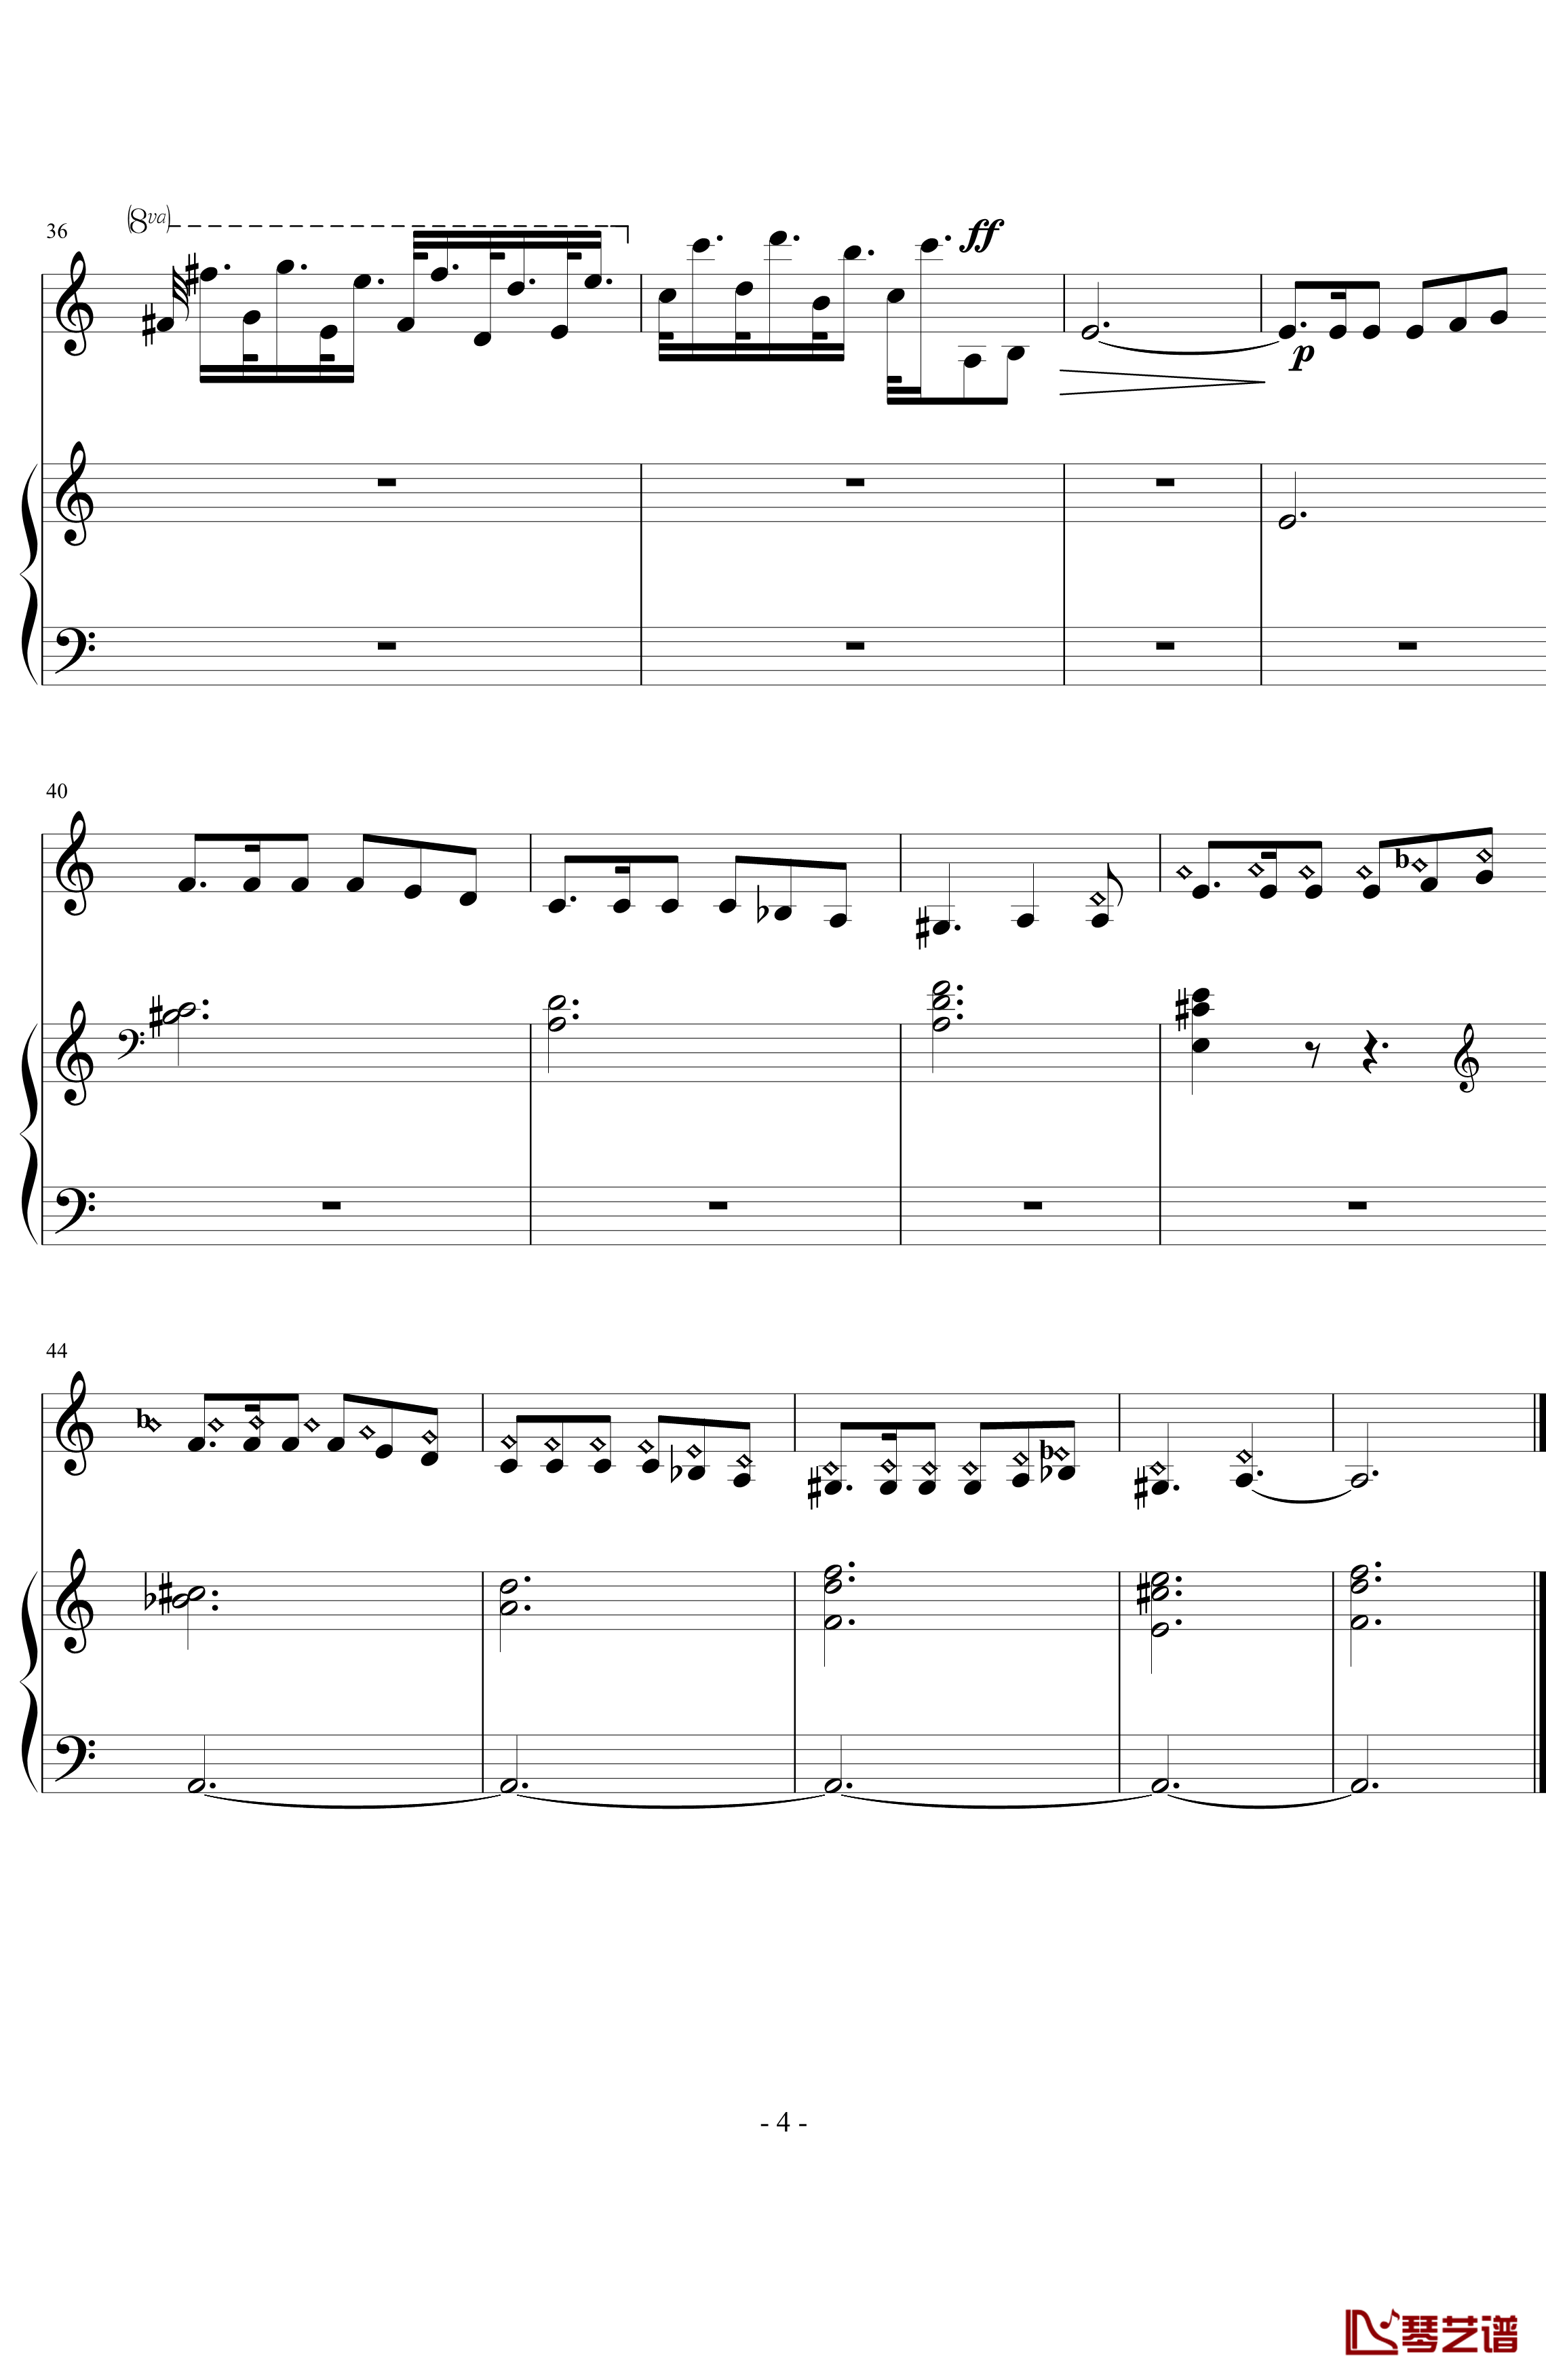 卡门主题幻想曲钢琴谱-慢板部分-萨拉萨蒂-Sarasate4